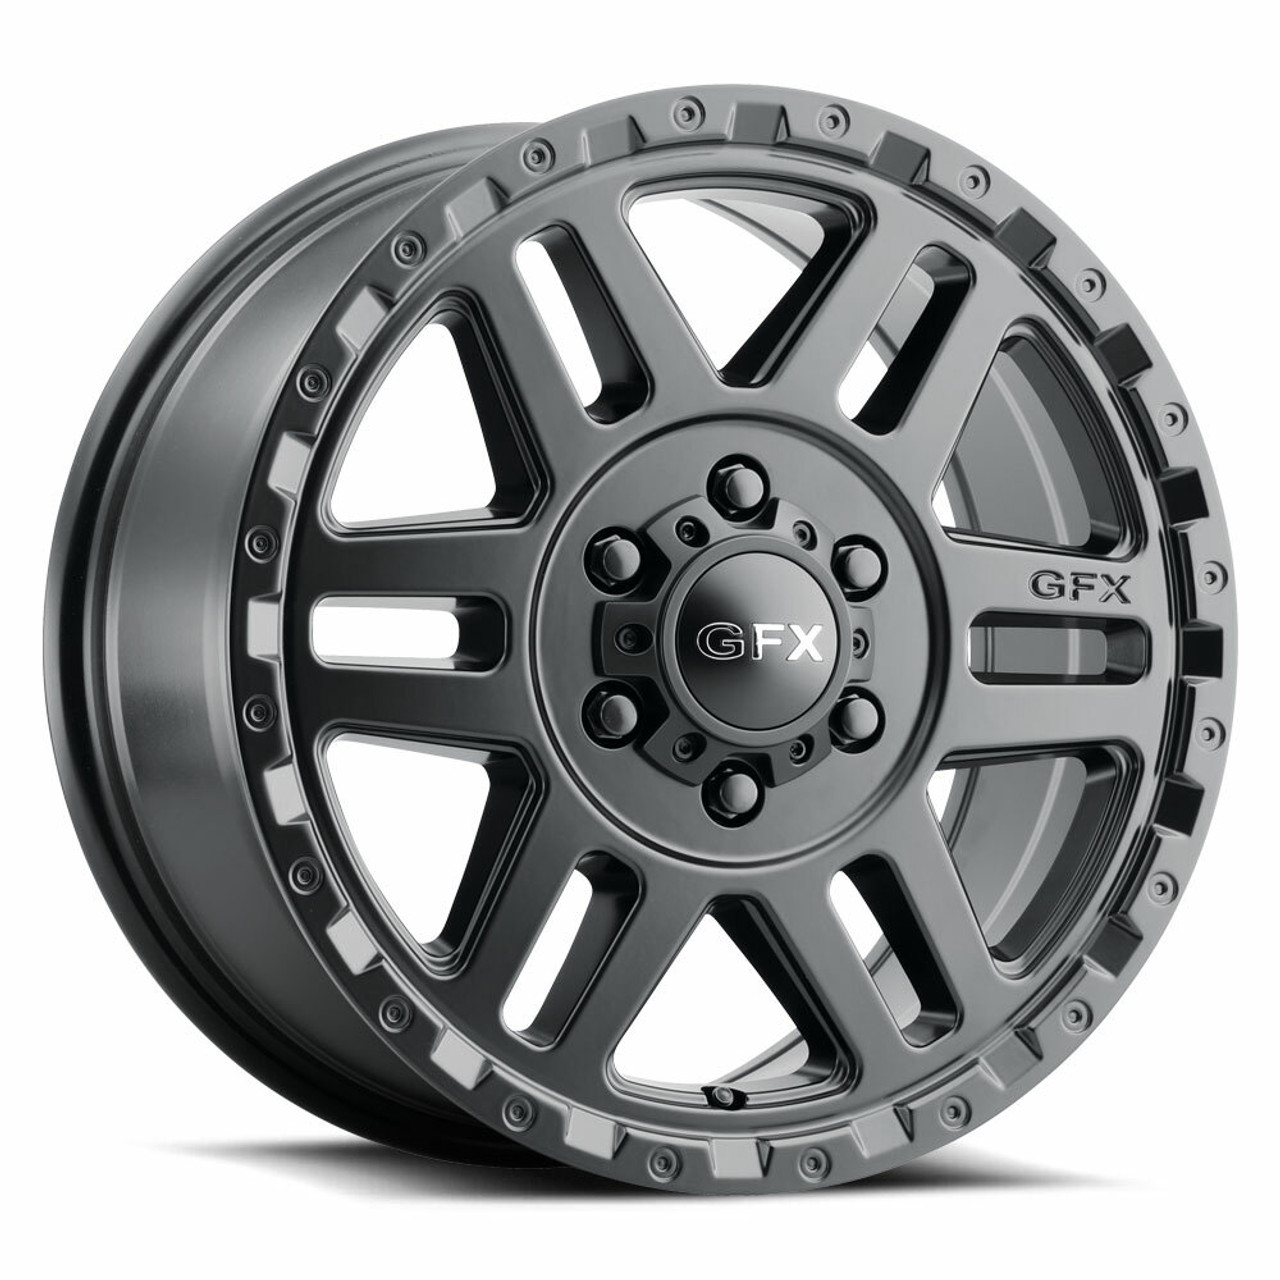 16" Voxx G-FX MV2 Matte Black Wheel 16x6.5 6x130 45mm Rim